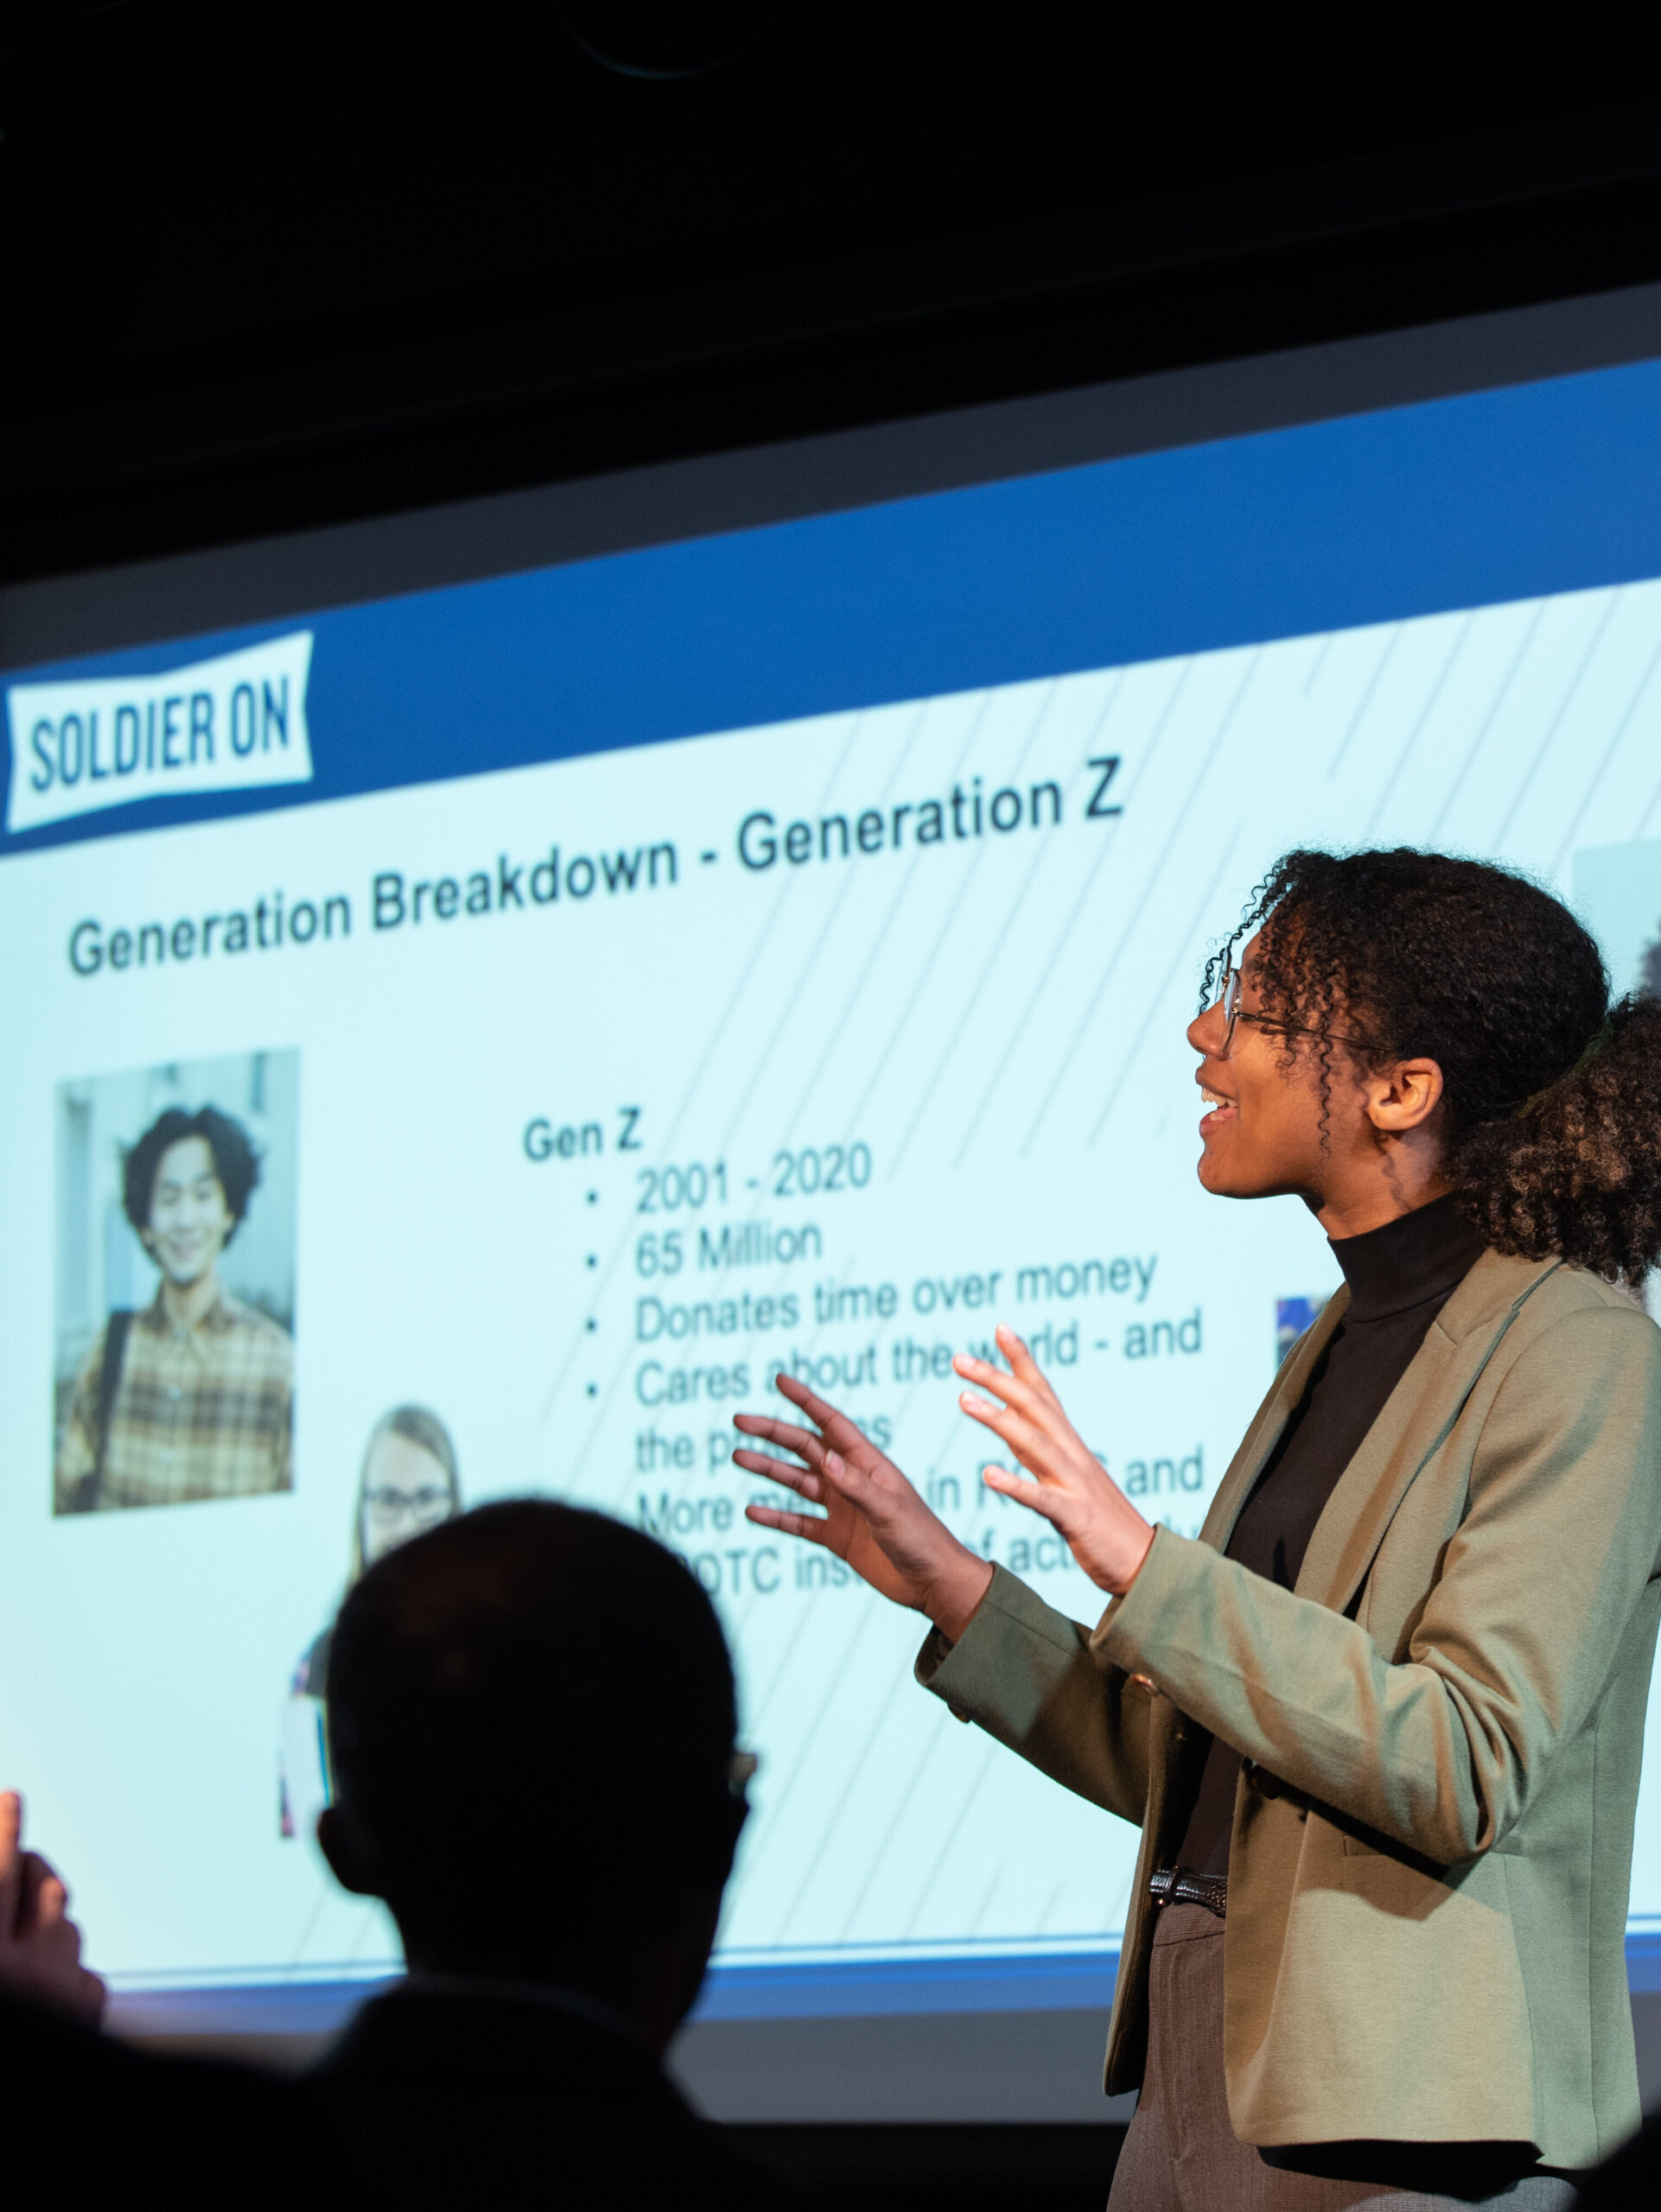 Woman speaks in front of screen that reads "Generation Breakdown- Generation Z"